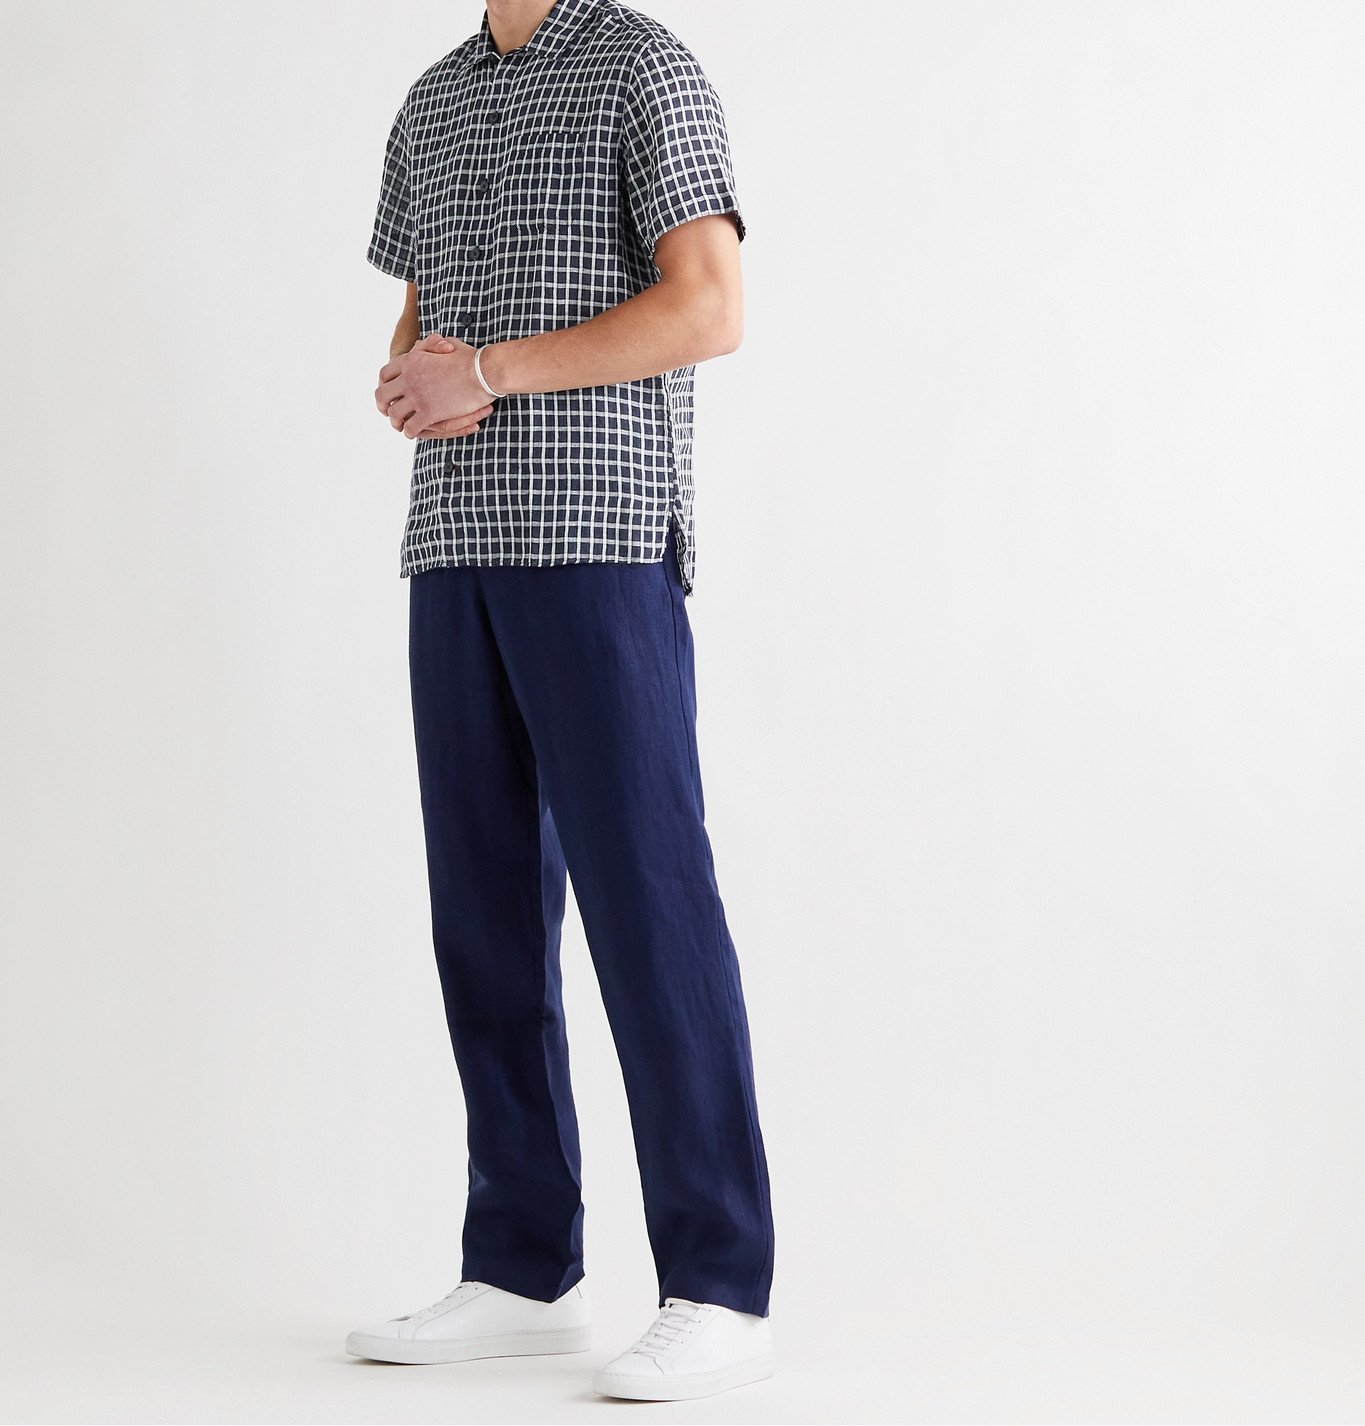 OLIVER SPENCER - Striped Linen Shirt - Blue